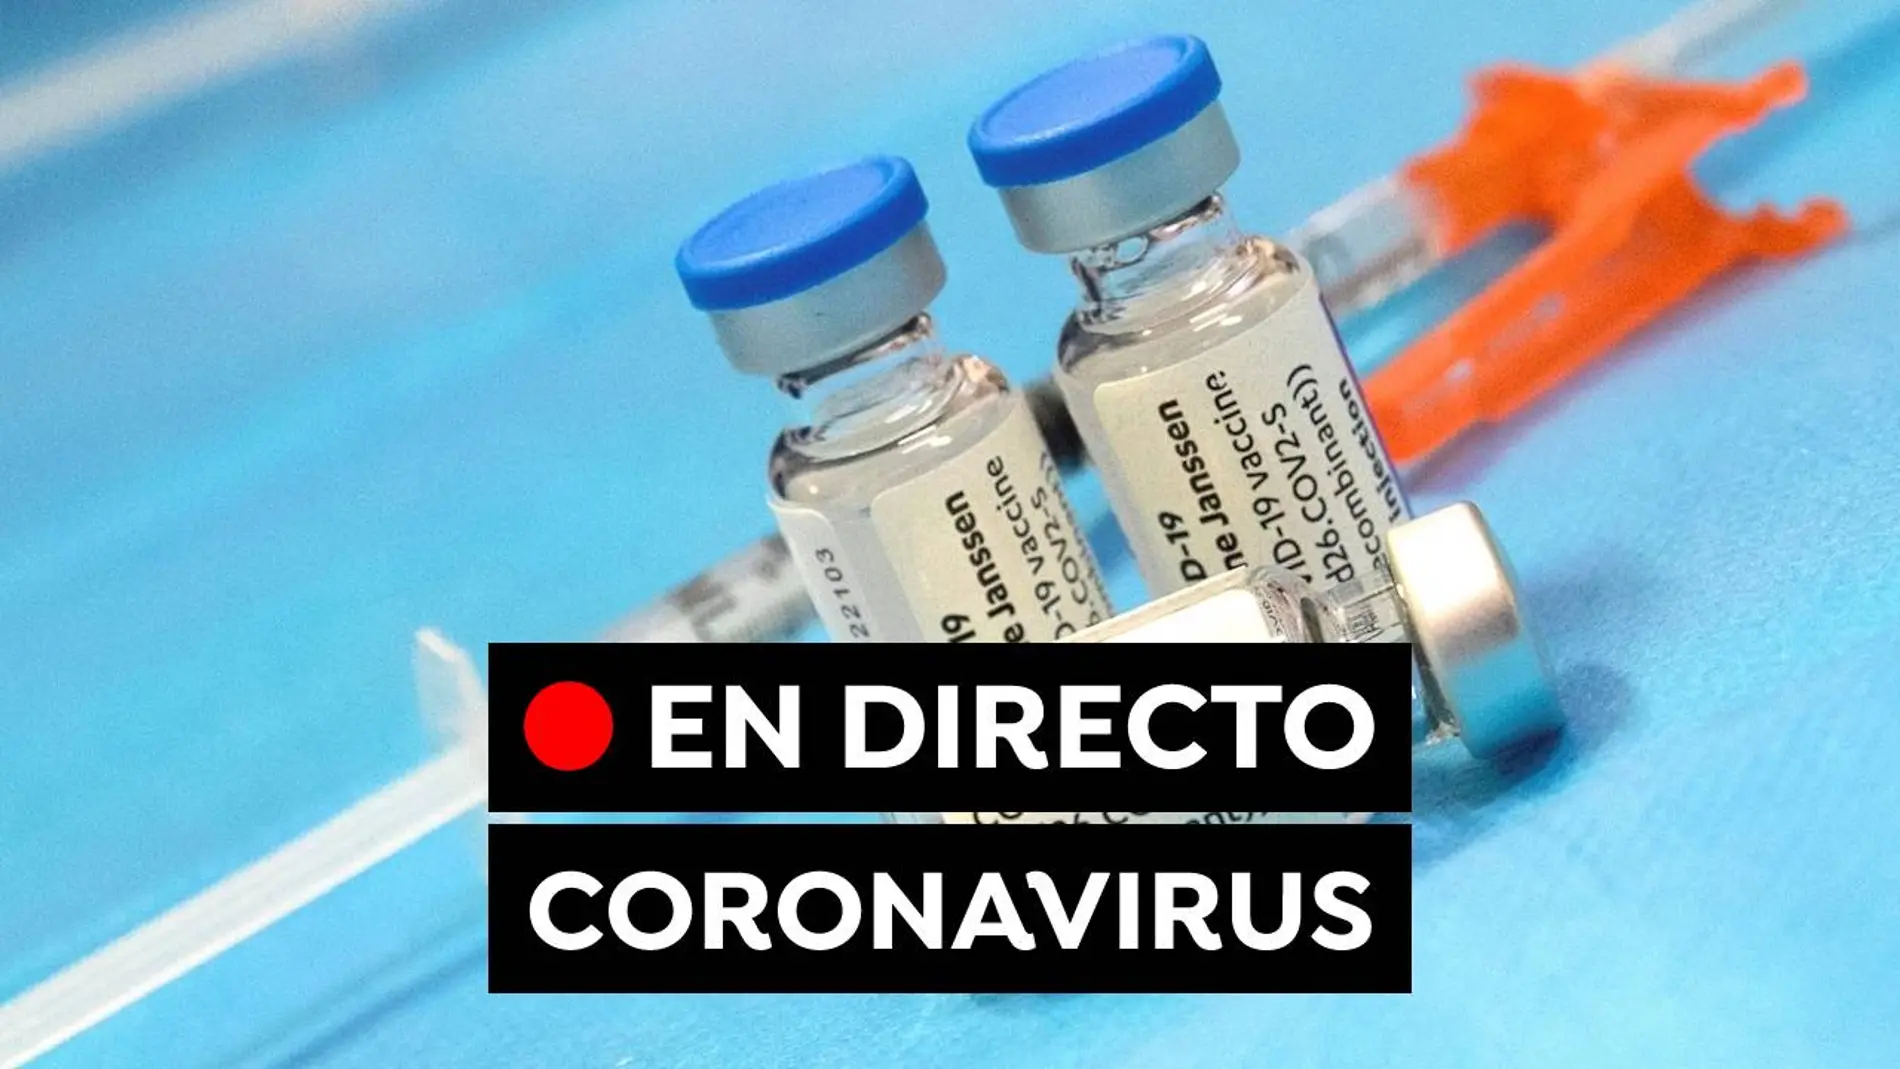 Coronavirus hoy: Restricciones en las comunidades, última hora de la vacunación y datos de contagios en España, en directo